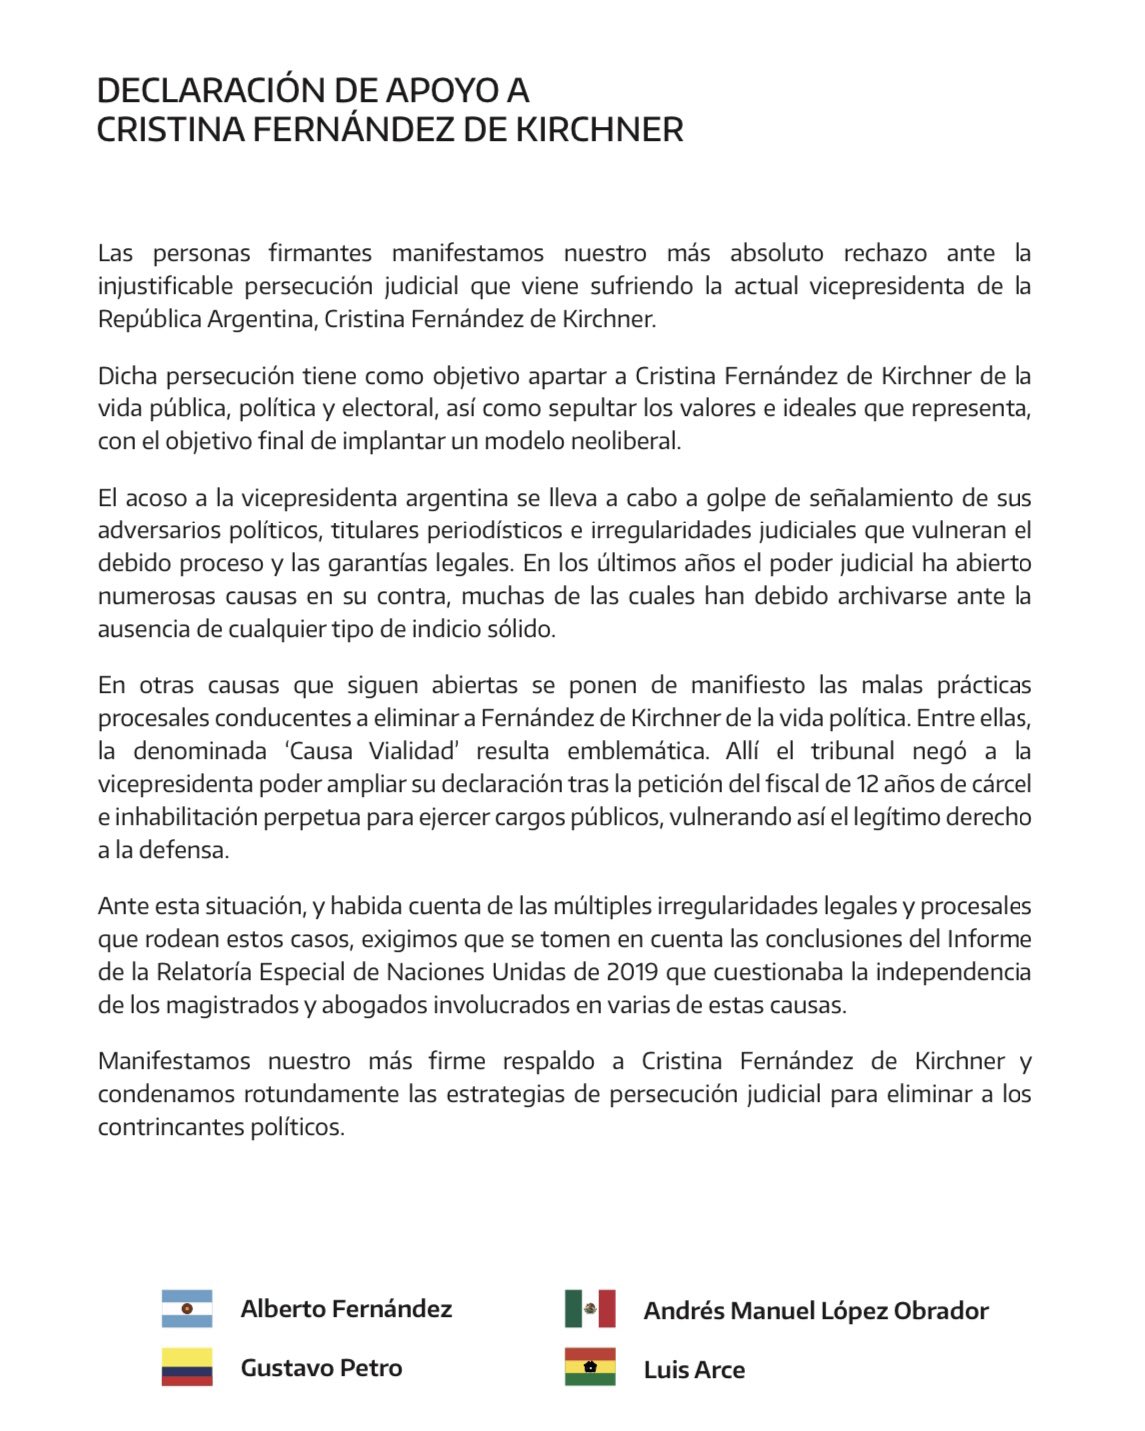 La carta completa que publicó Alberto Fernández, firmada por otros tres presidentes de la región, para denunciar la "persecución judicial" a Cristina Kirchner